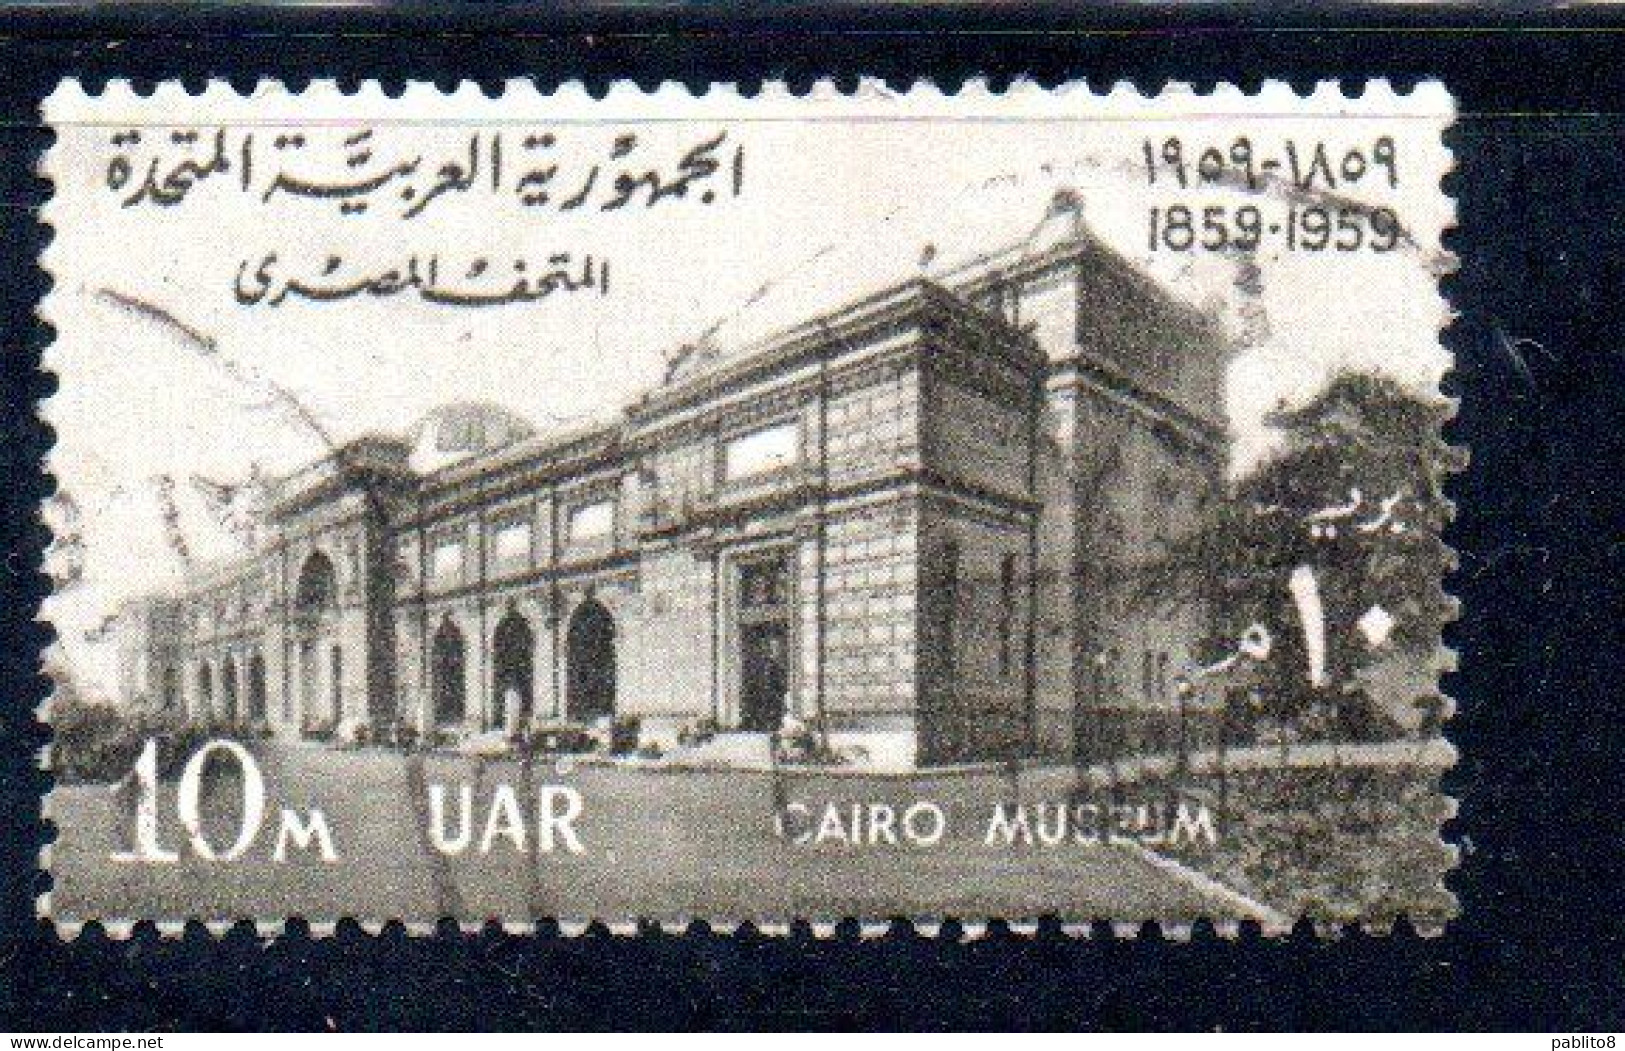 UAR EGYPT EGITTO 1959 CENTENARY OF CAIRO MUSEUM 10m USED USATO OBLITERE' - Usados